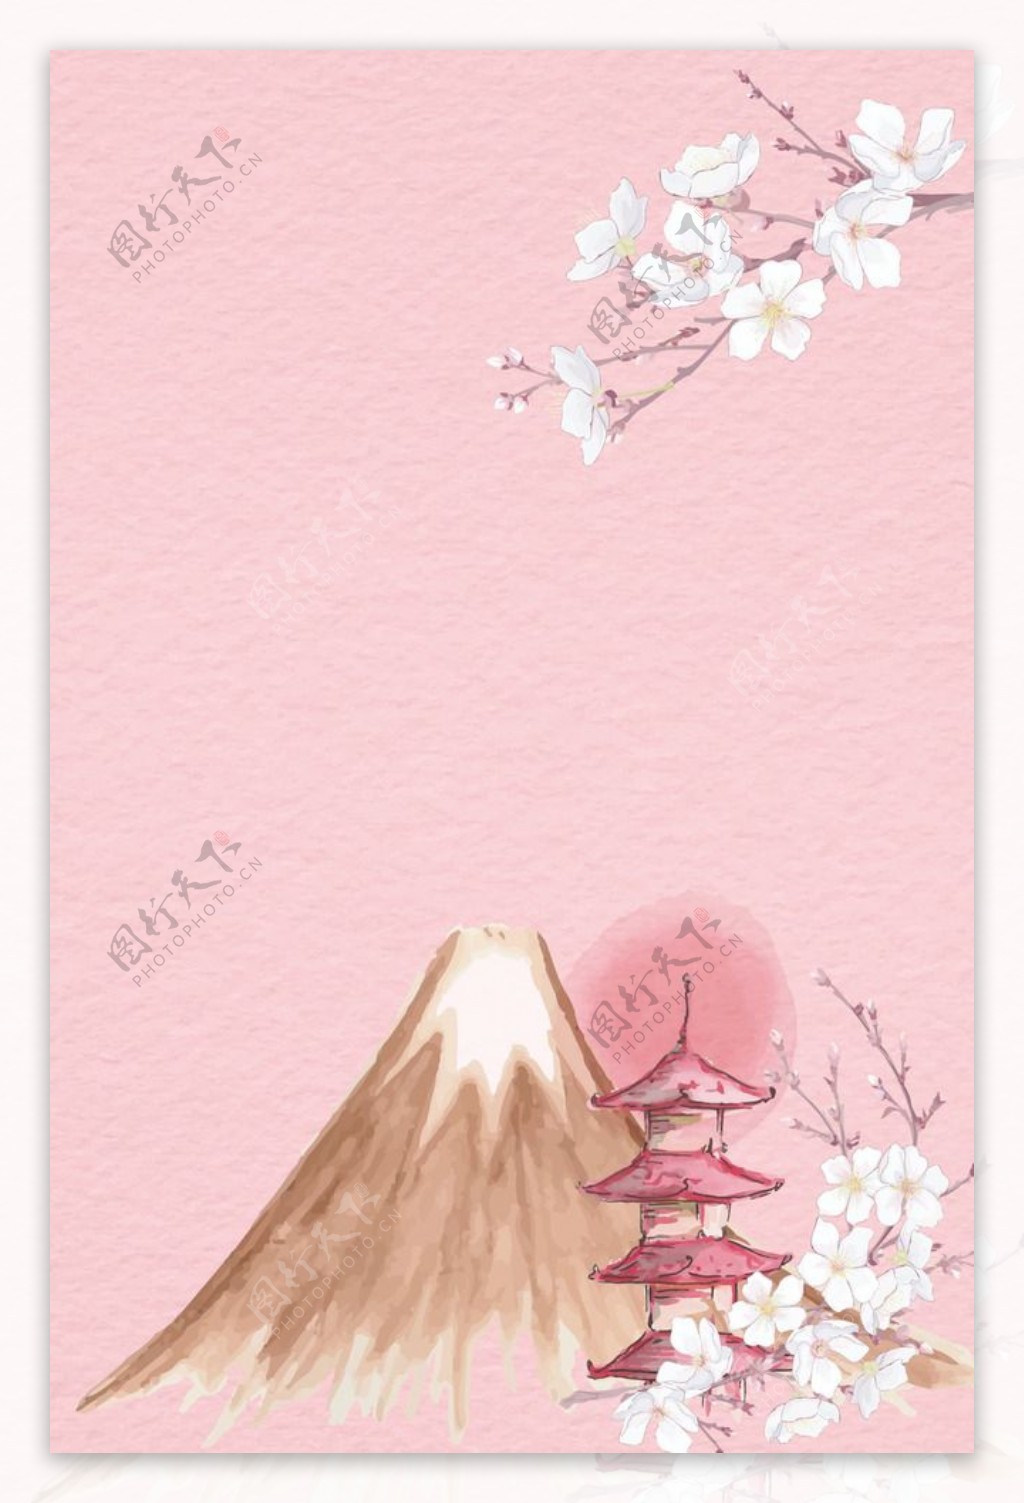 唯美富士山樱花背景